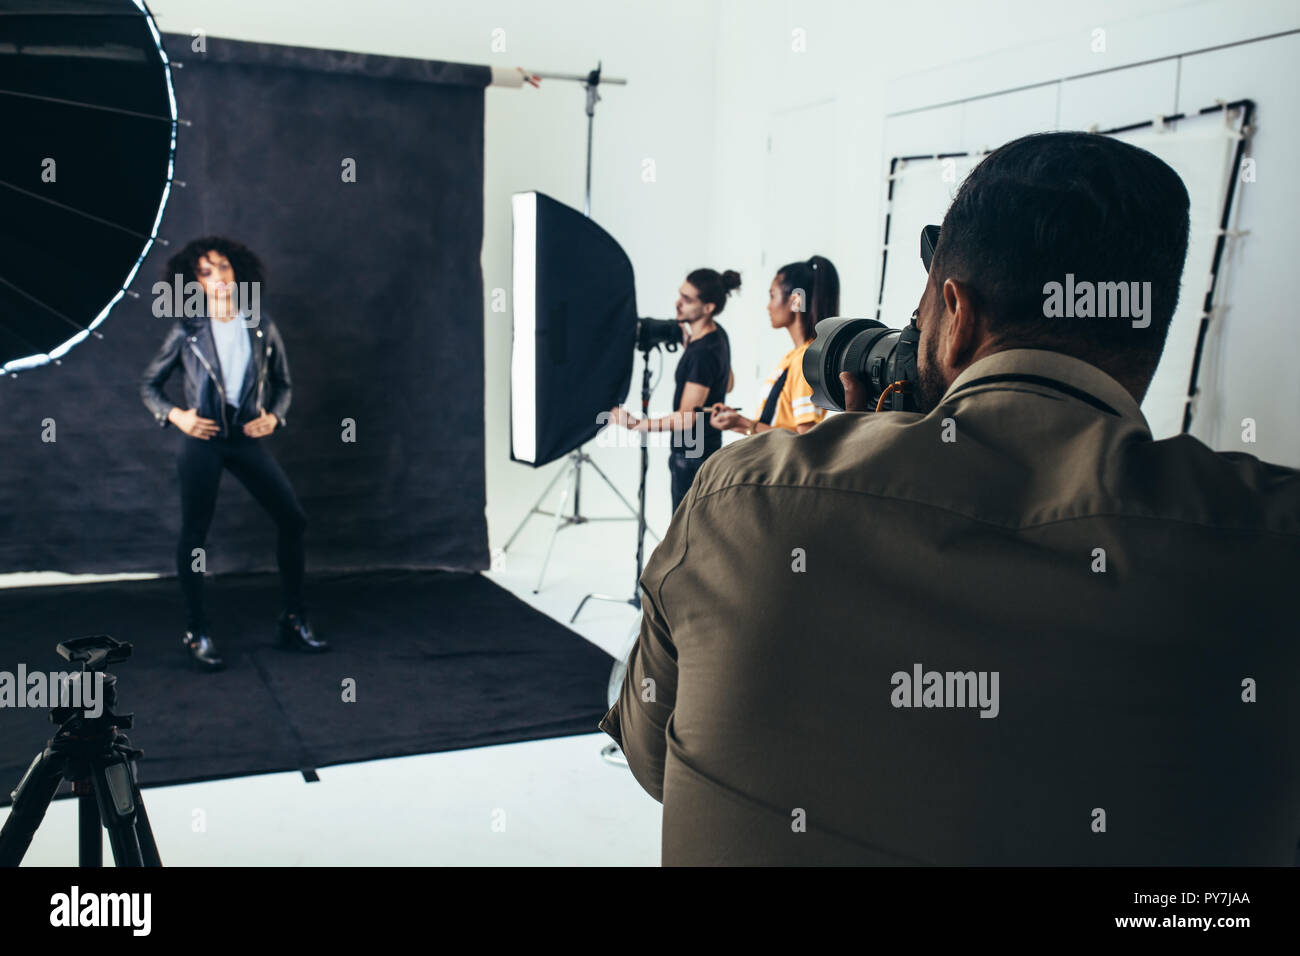 Photos de tournage photographe un modèle dans un studio avec son équipage holding studio flash lights. Banque D'Images